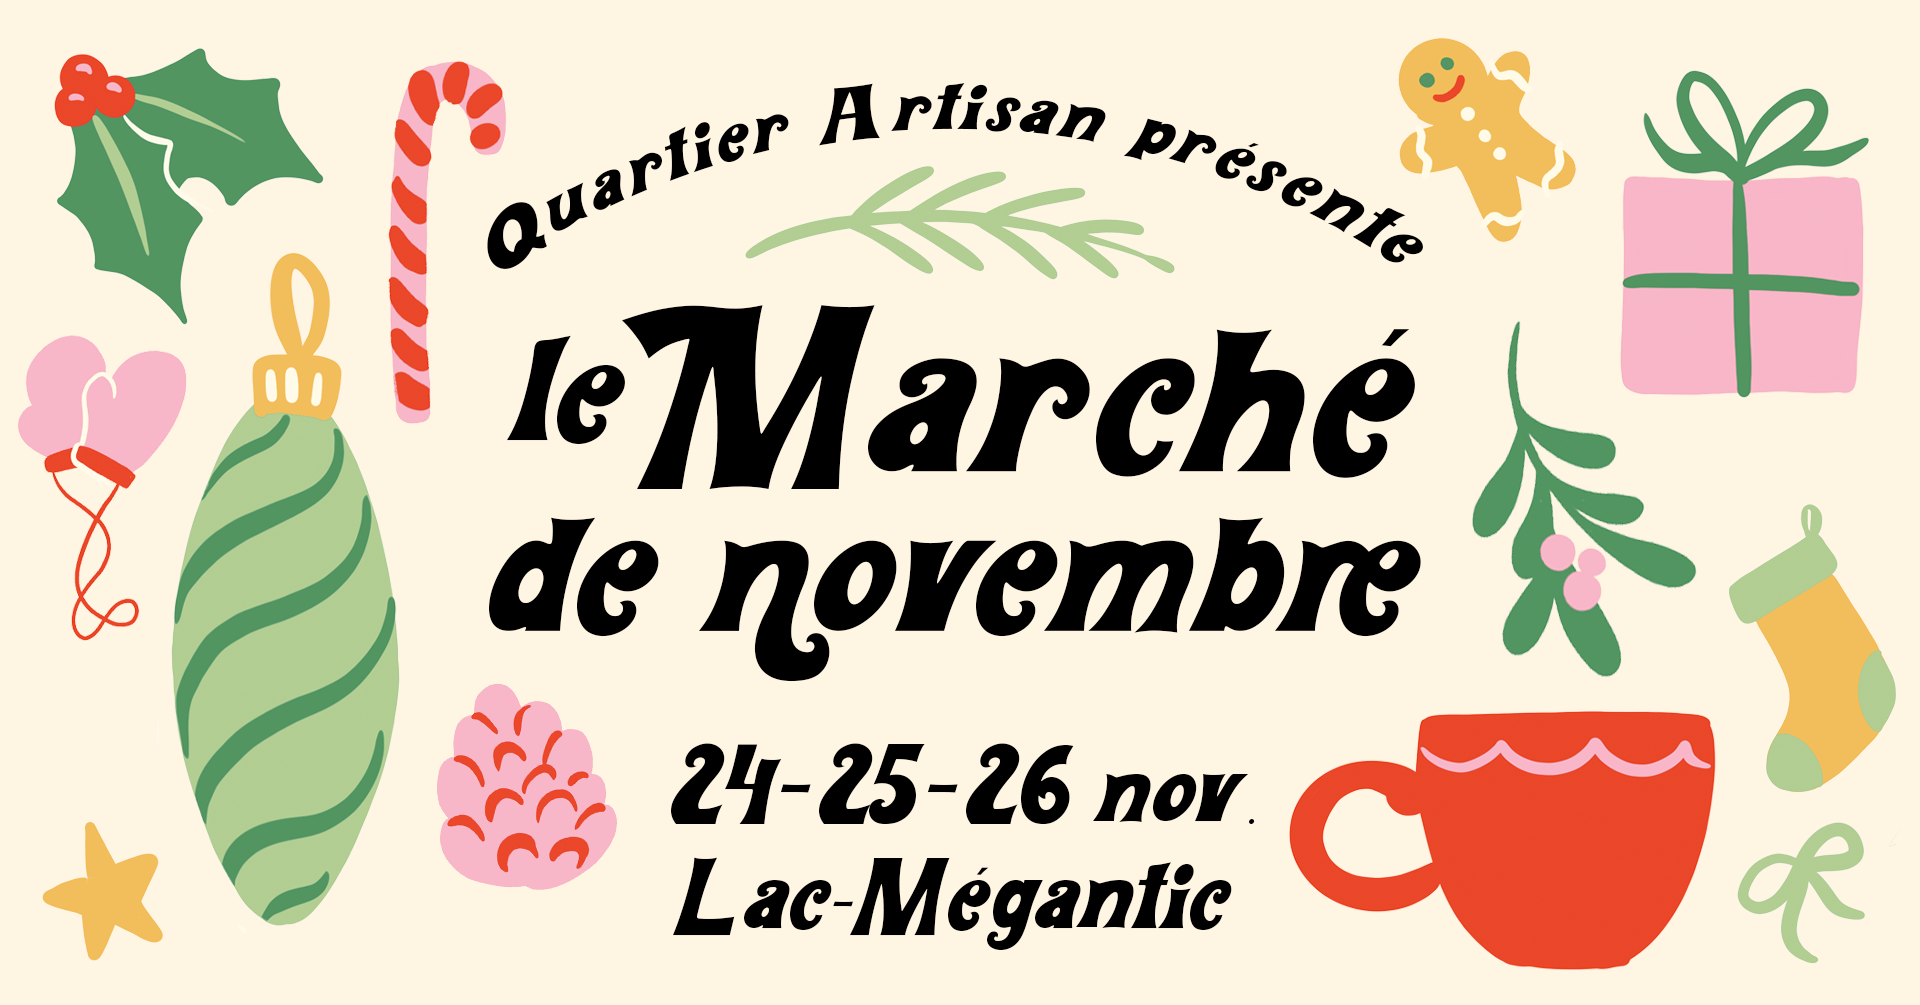 Marché de novembre par Quartier Artisan les 24-25-26 novembre 2023 à Lac-Mégantic